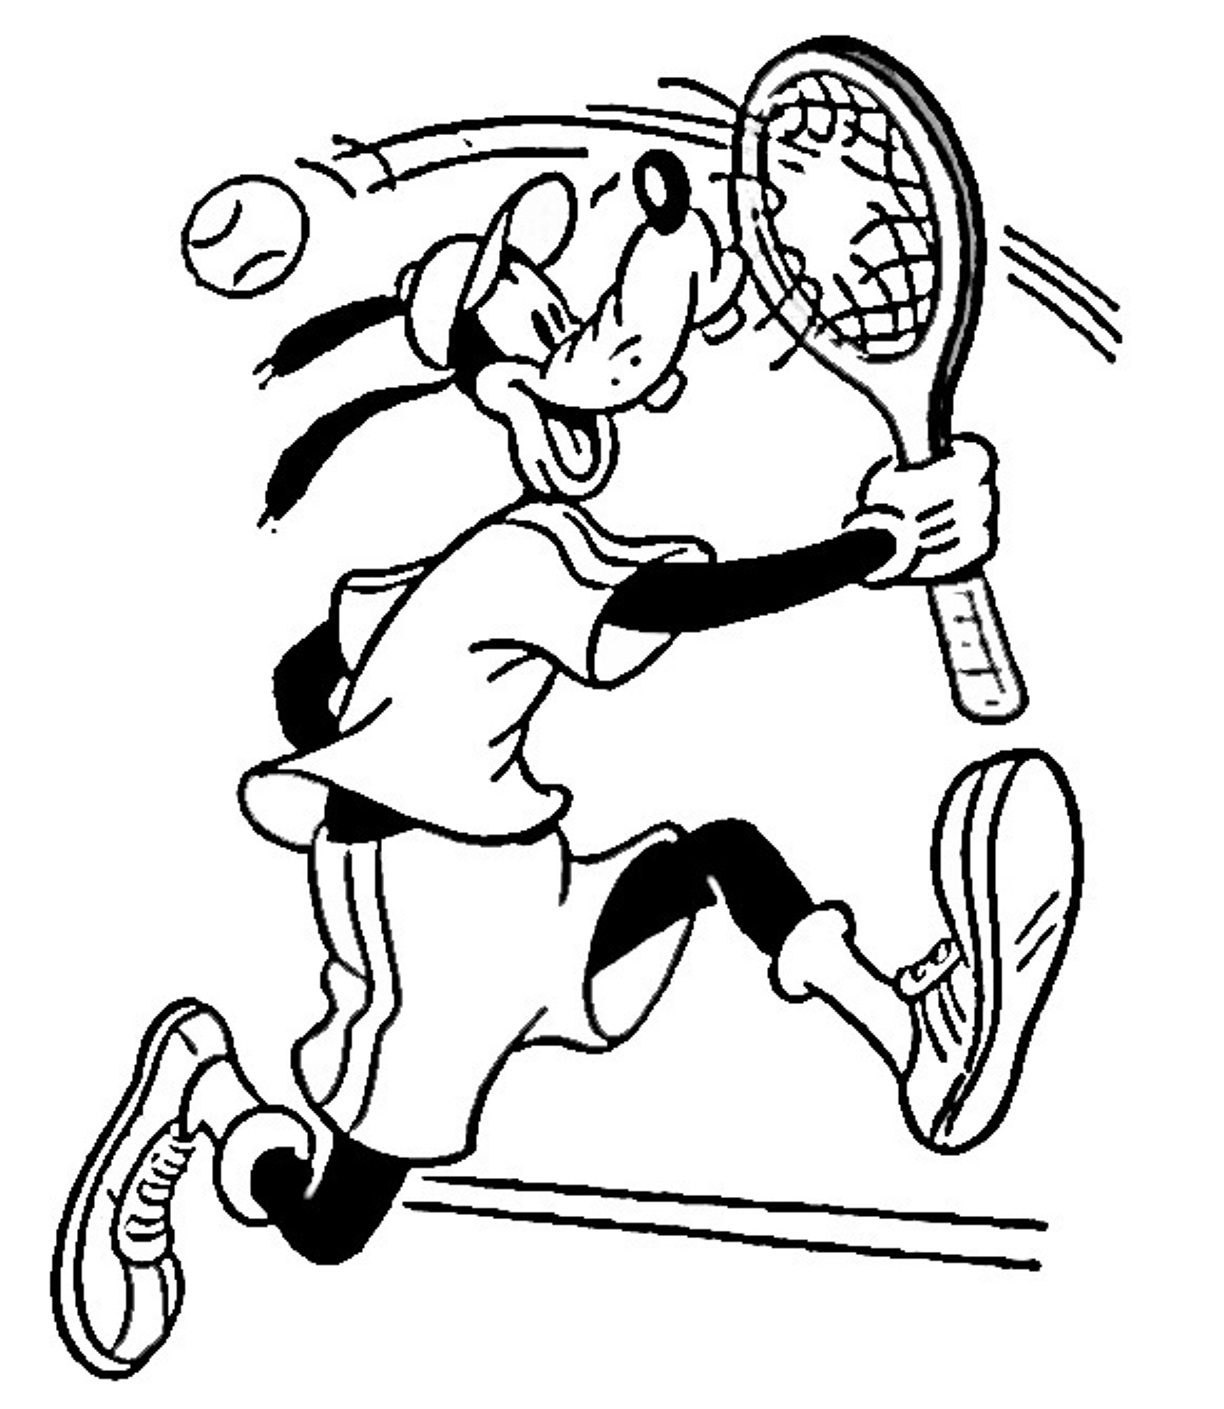 Image #17596 - Coloriage tennis gratuit